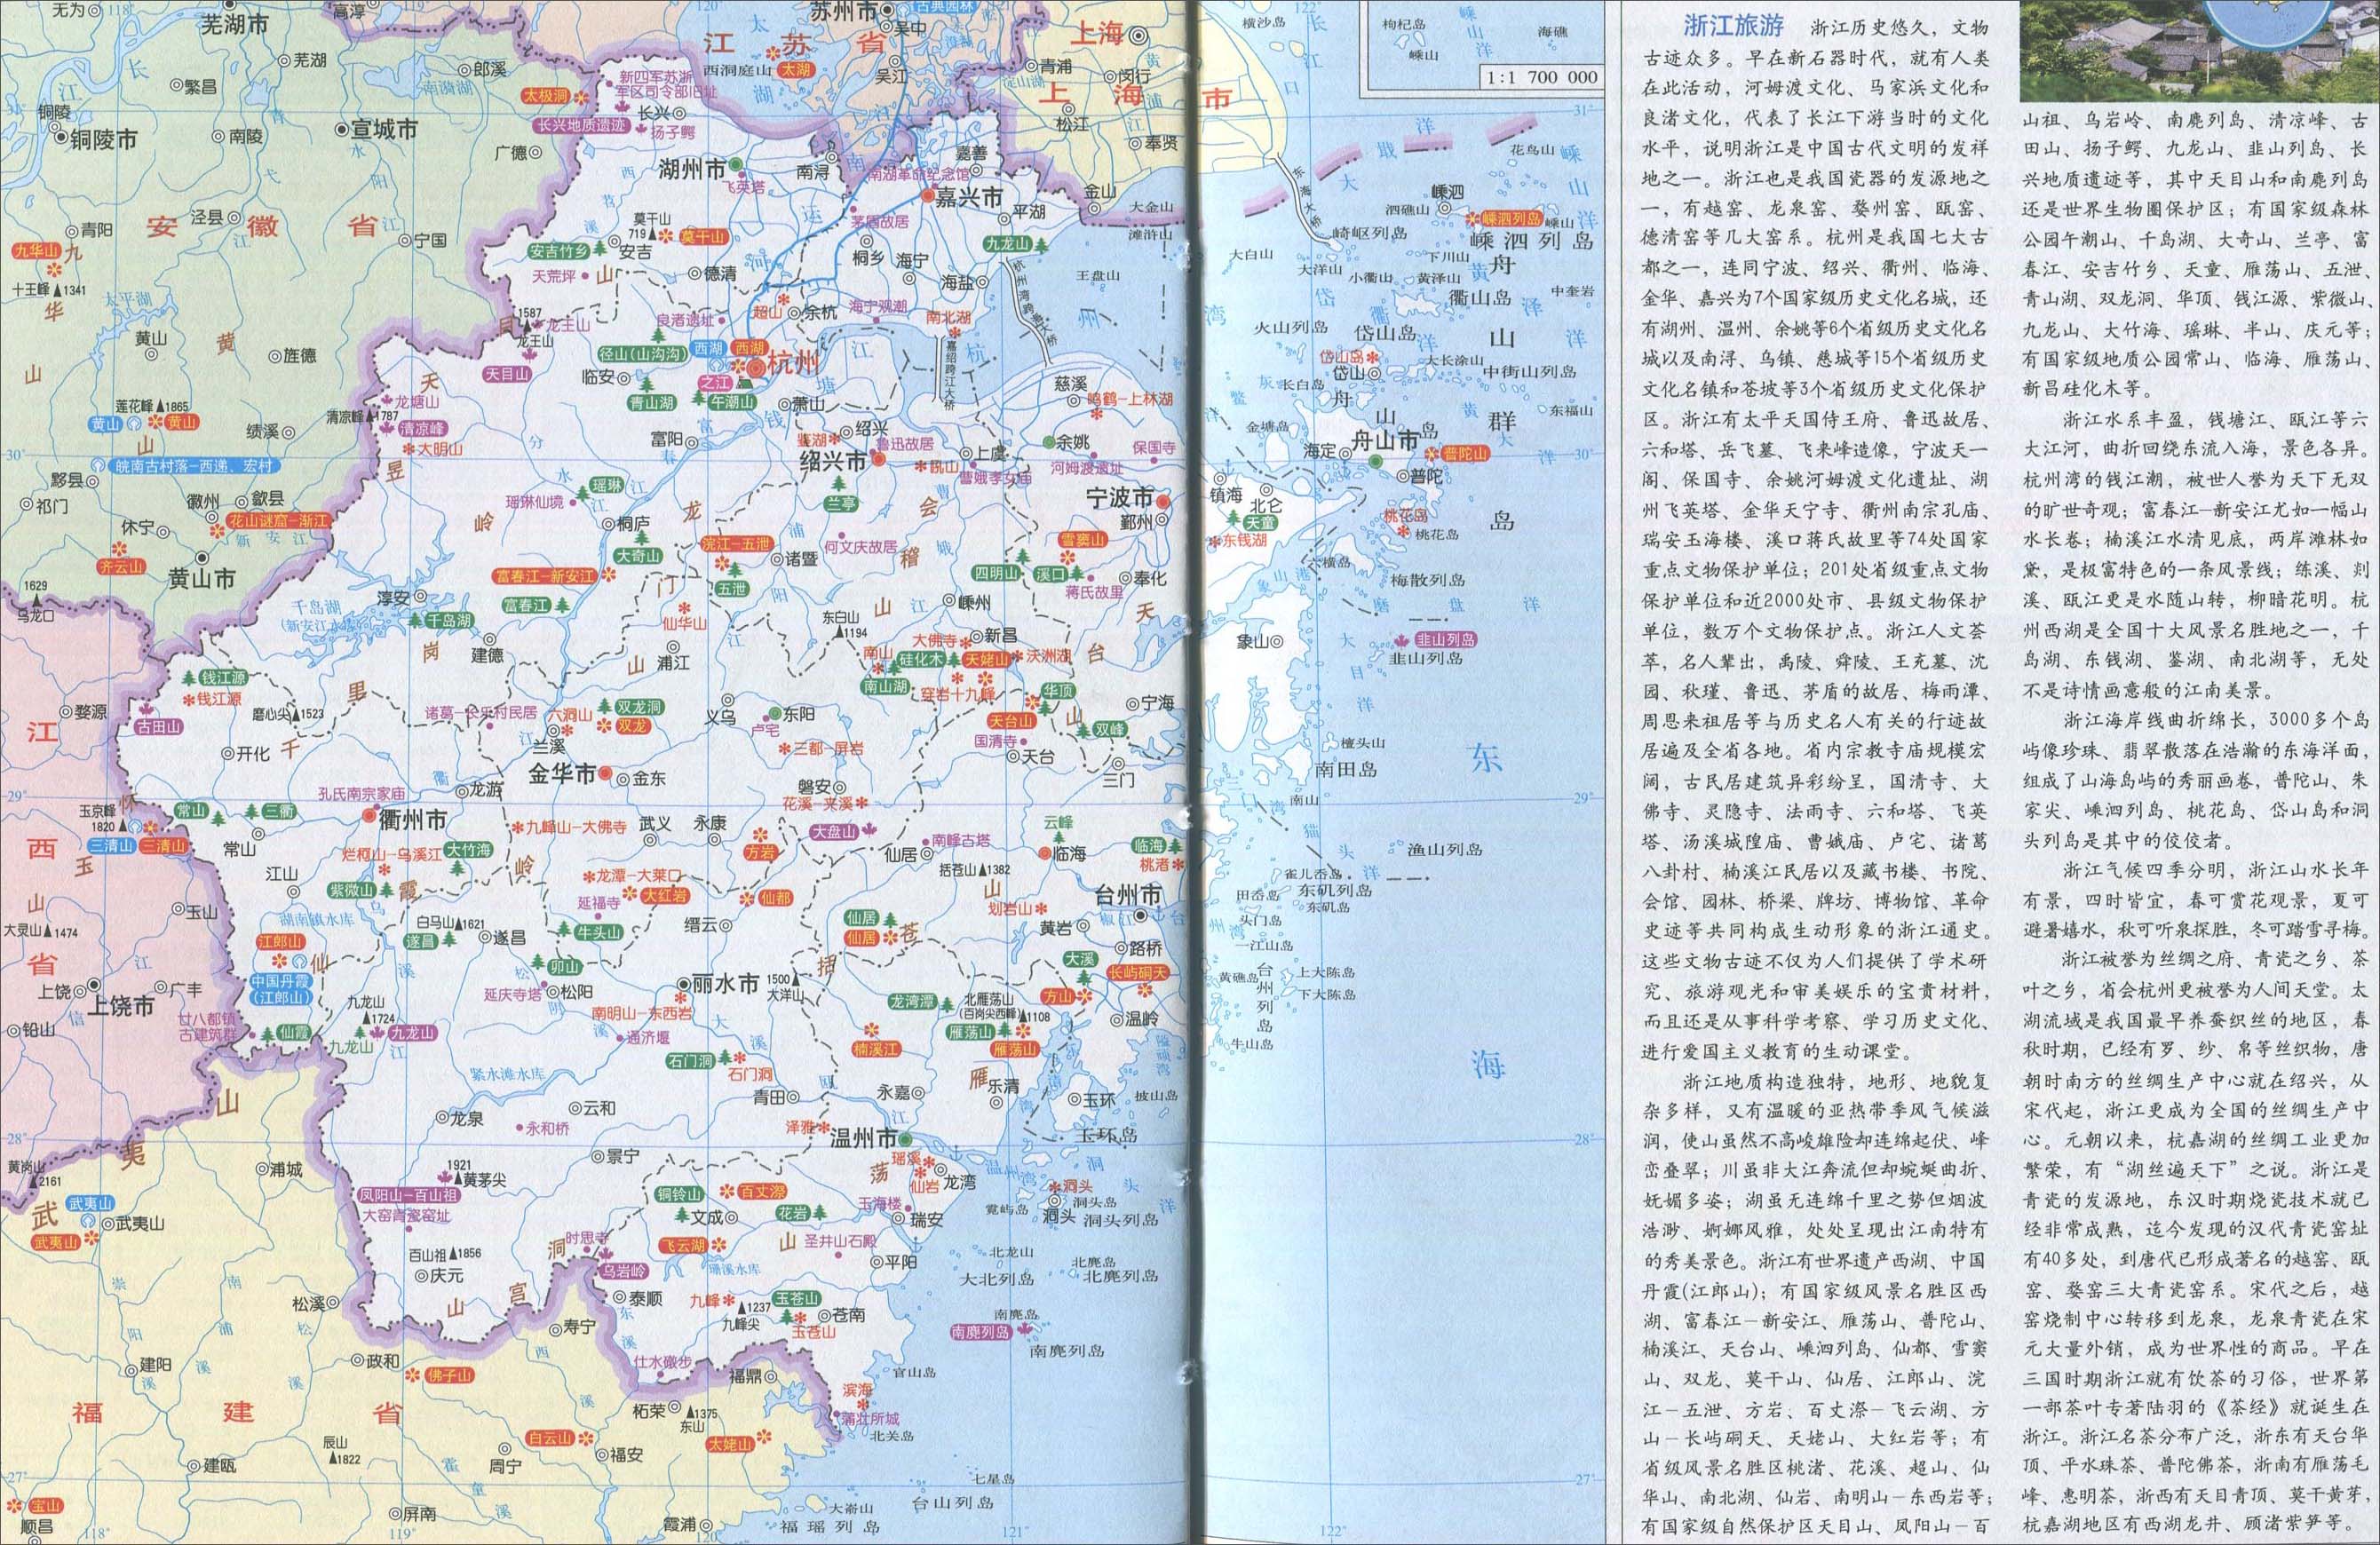 中国地图 浙江 >> 浙江旅游地图  相关链接: 中国  北京  上海  天津图片